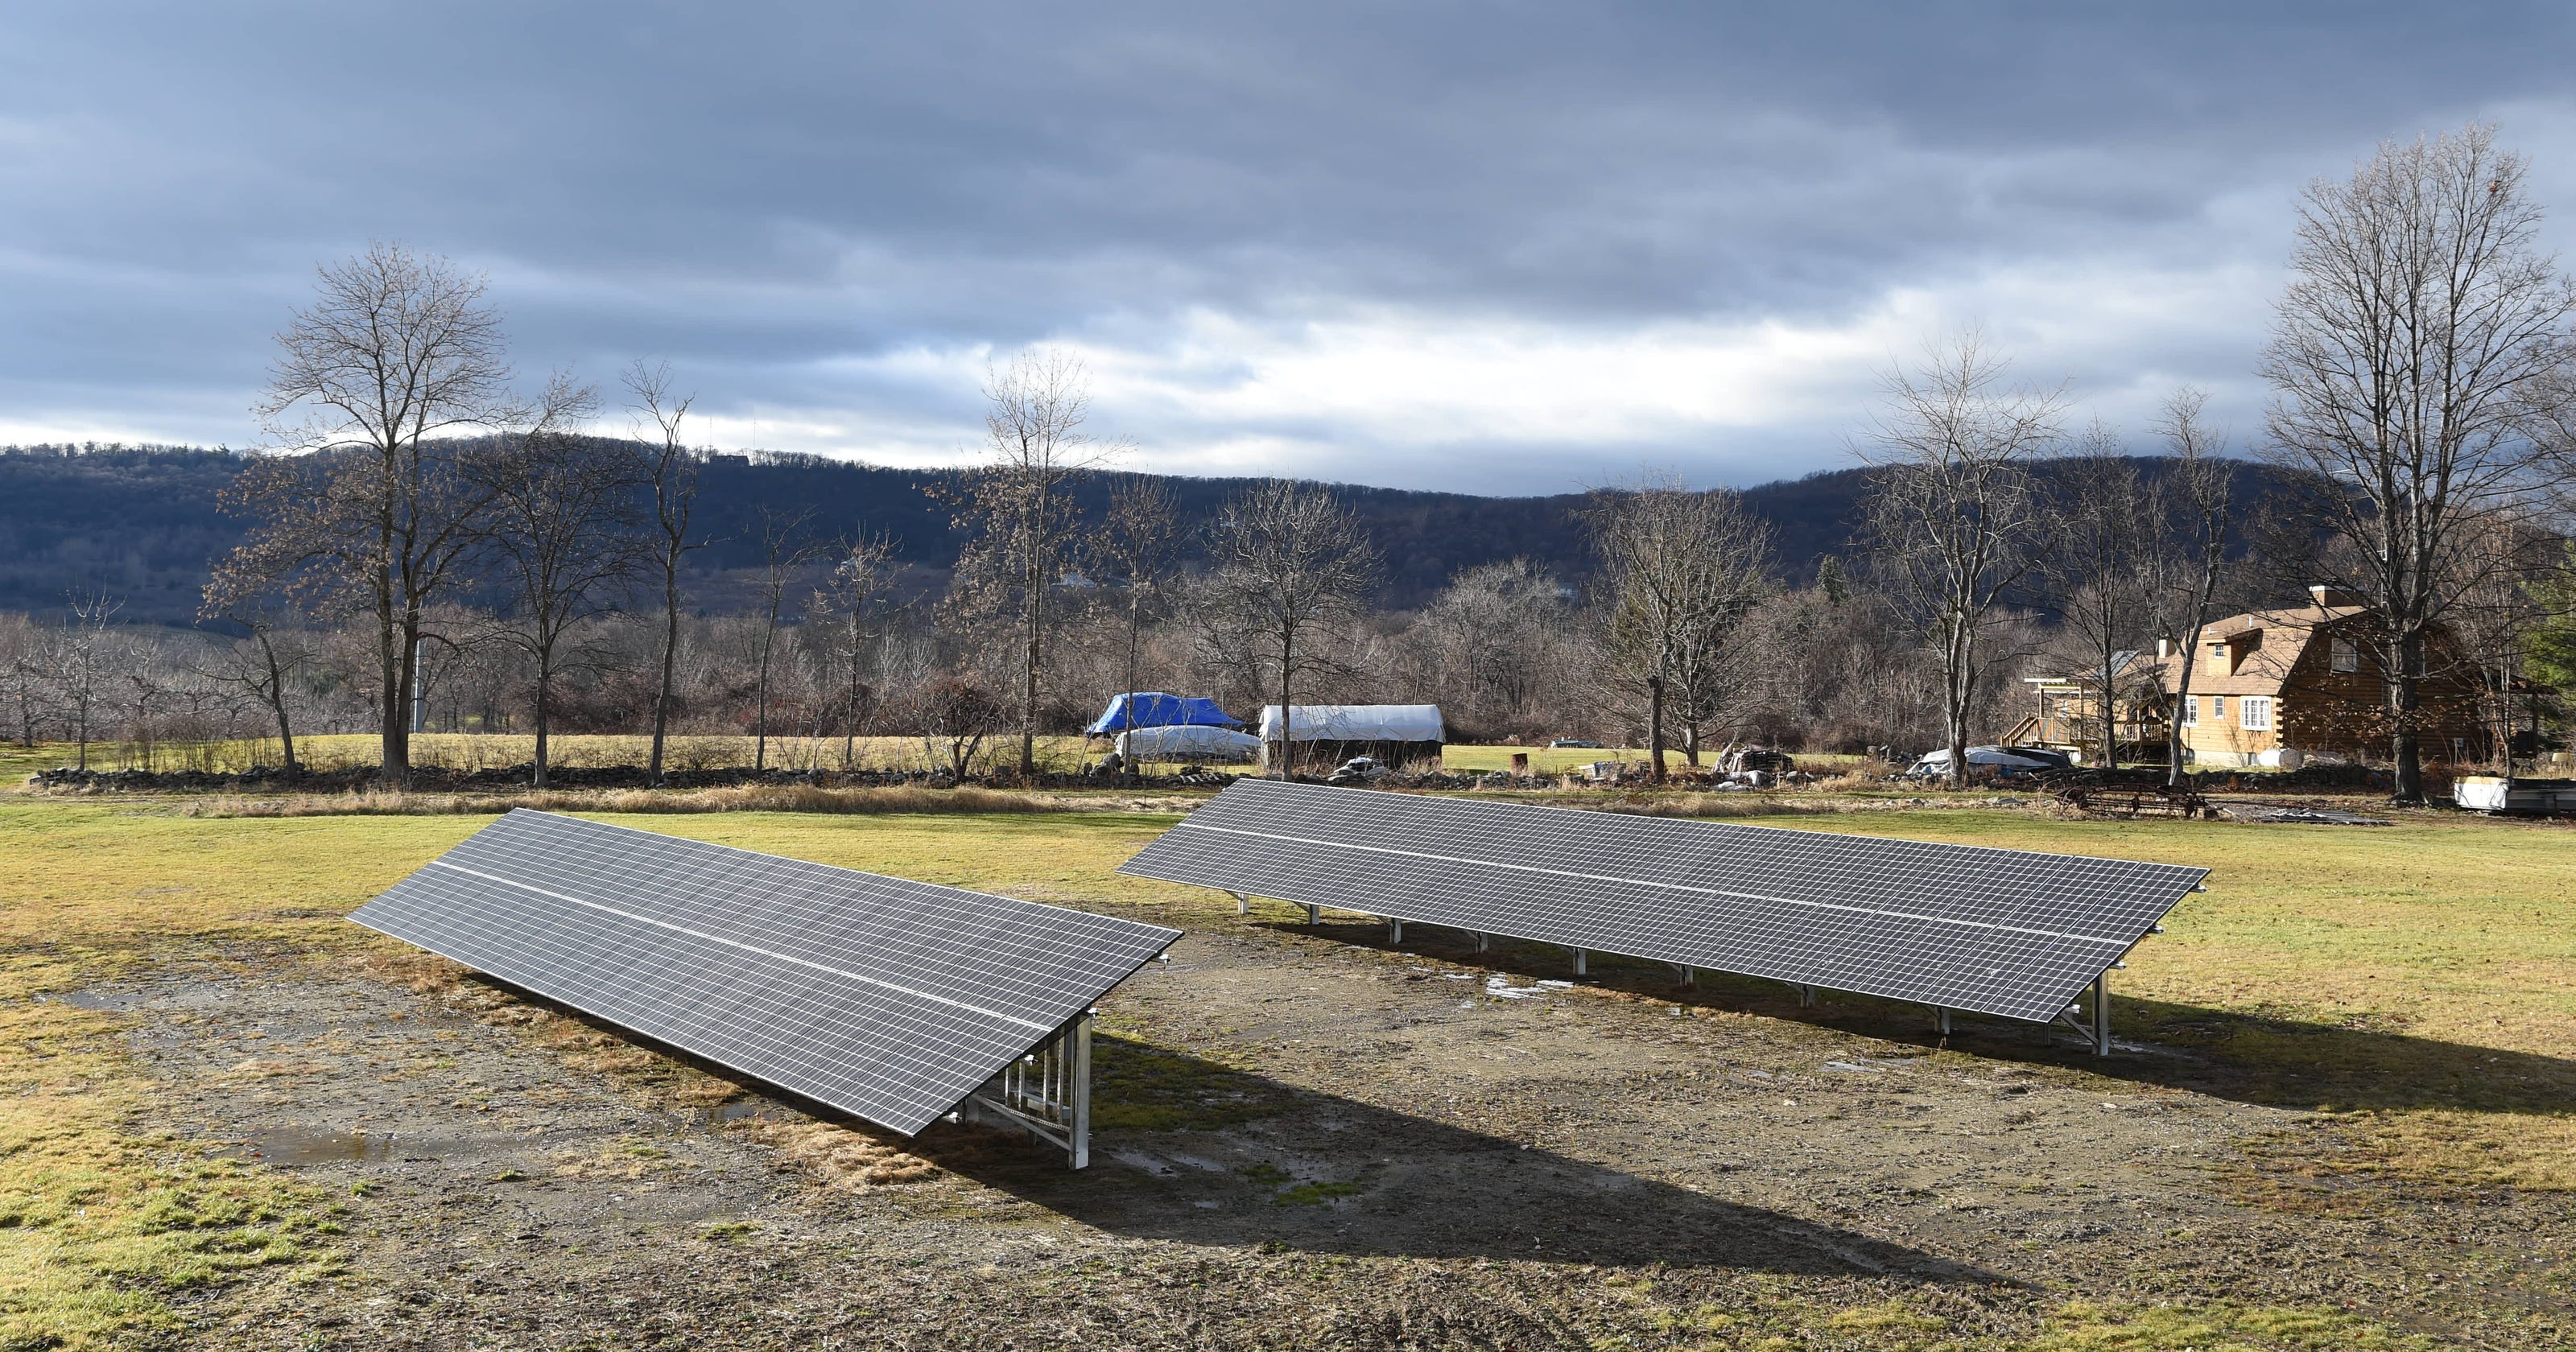 Solar panel plan sparks Arlington schools controversy